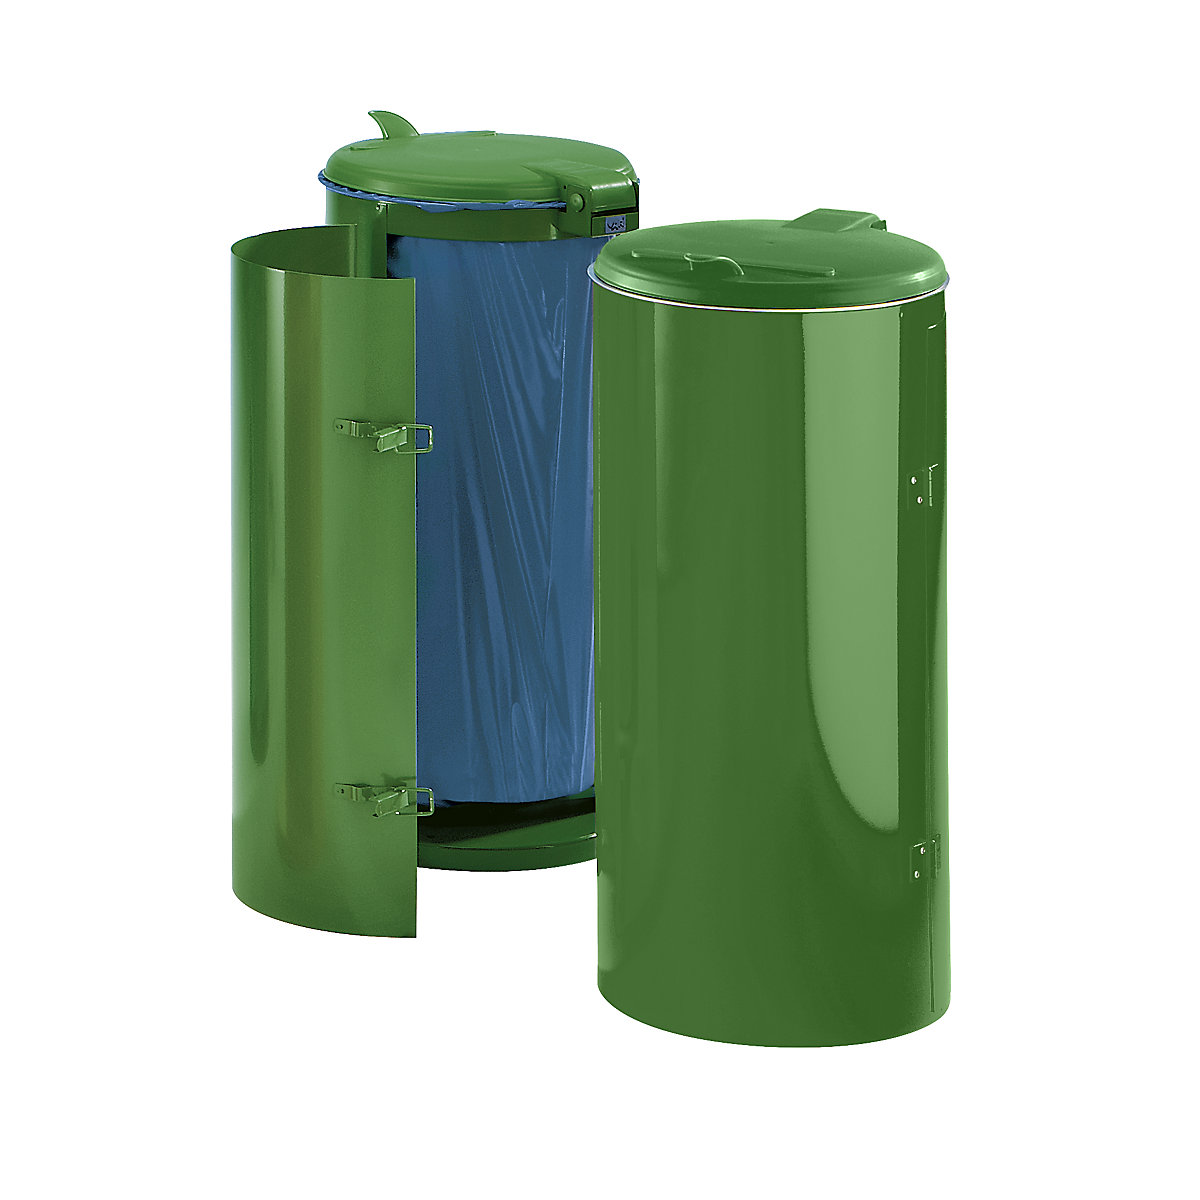 Zberač odpadkov z oceľového plechu – VAR, pre objem 120 l, s jednokrídlovými dvierkami, zelená so zeleným plastovým vekom-3